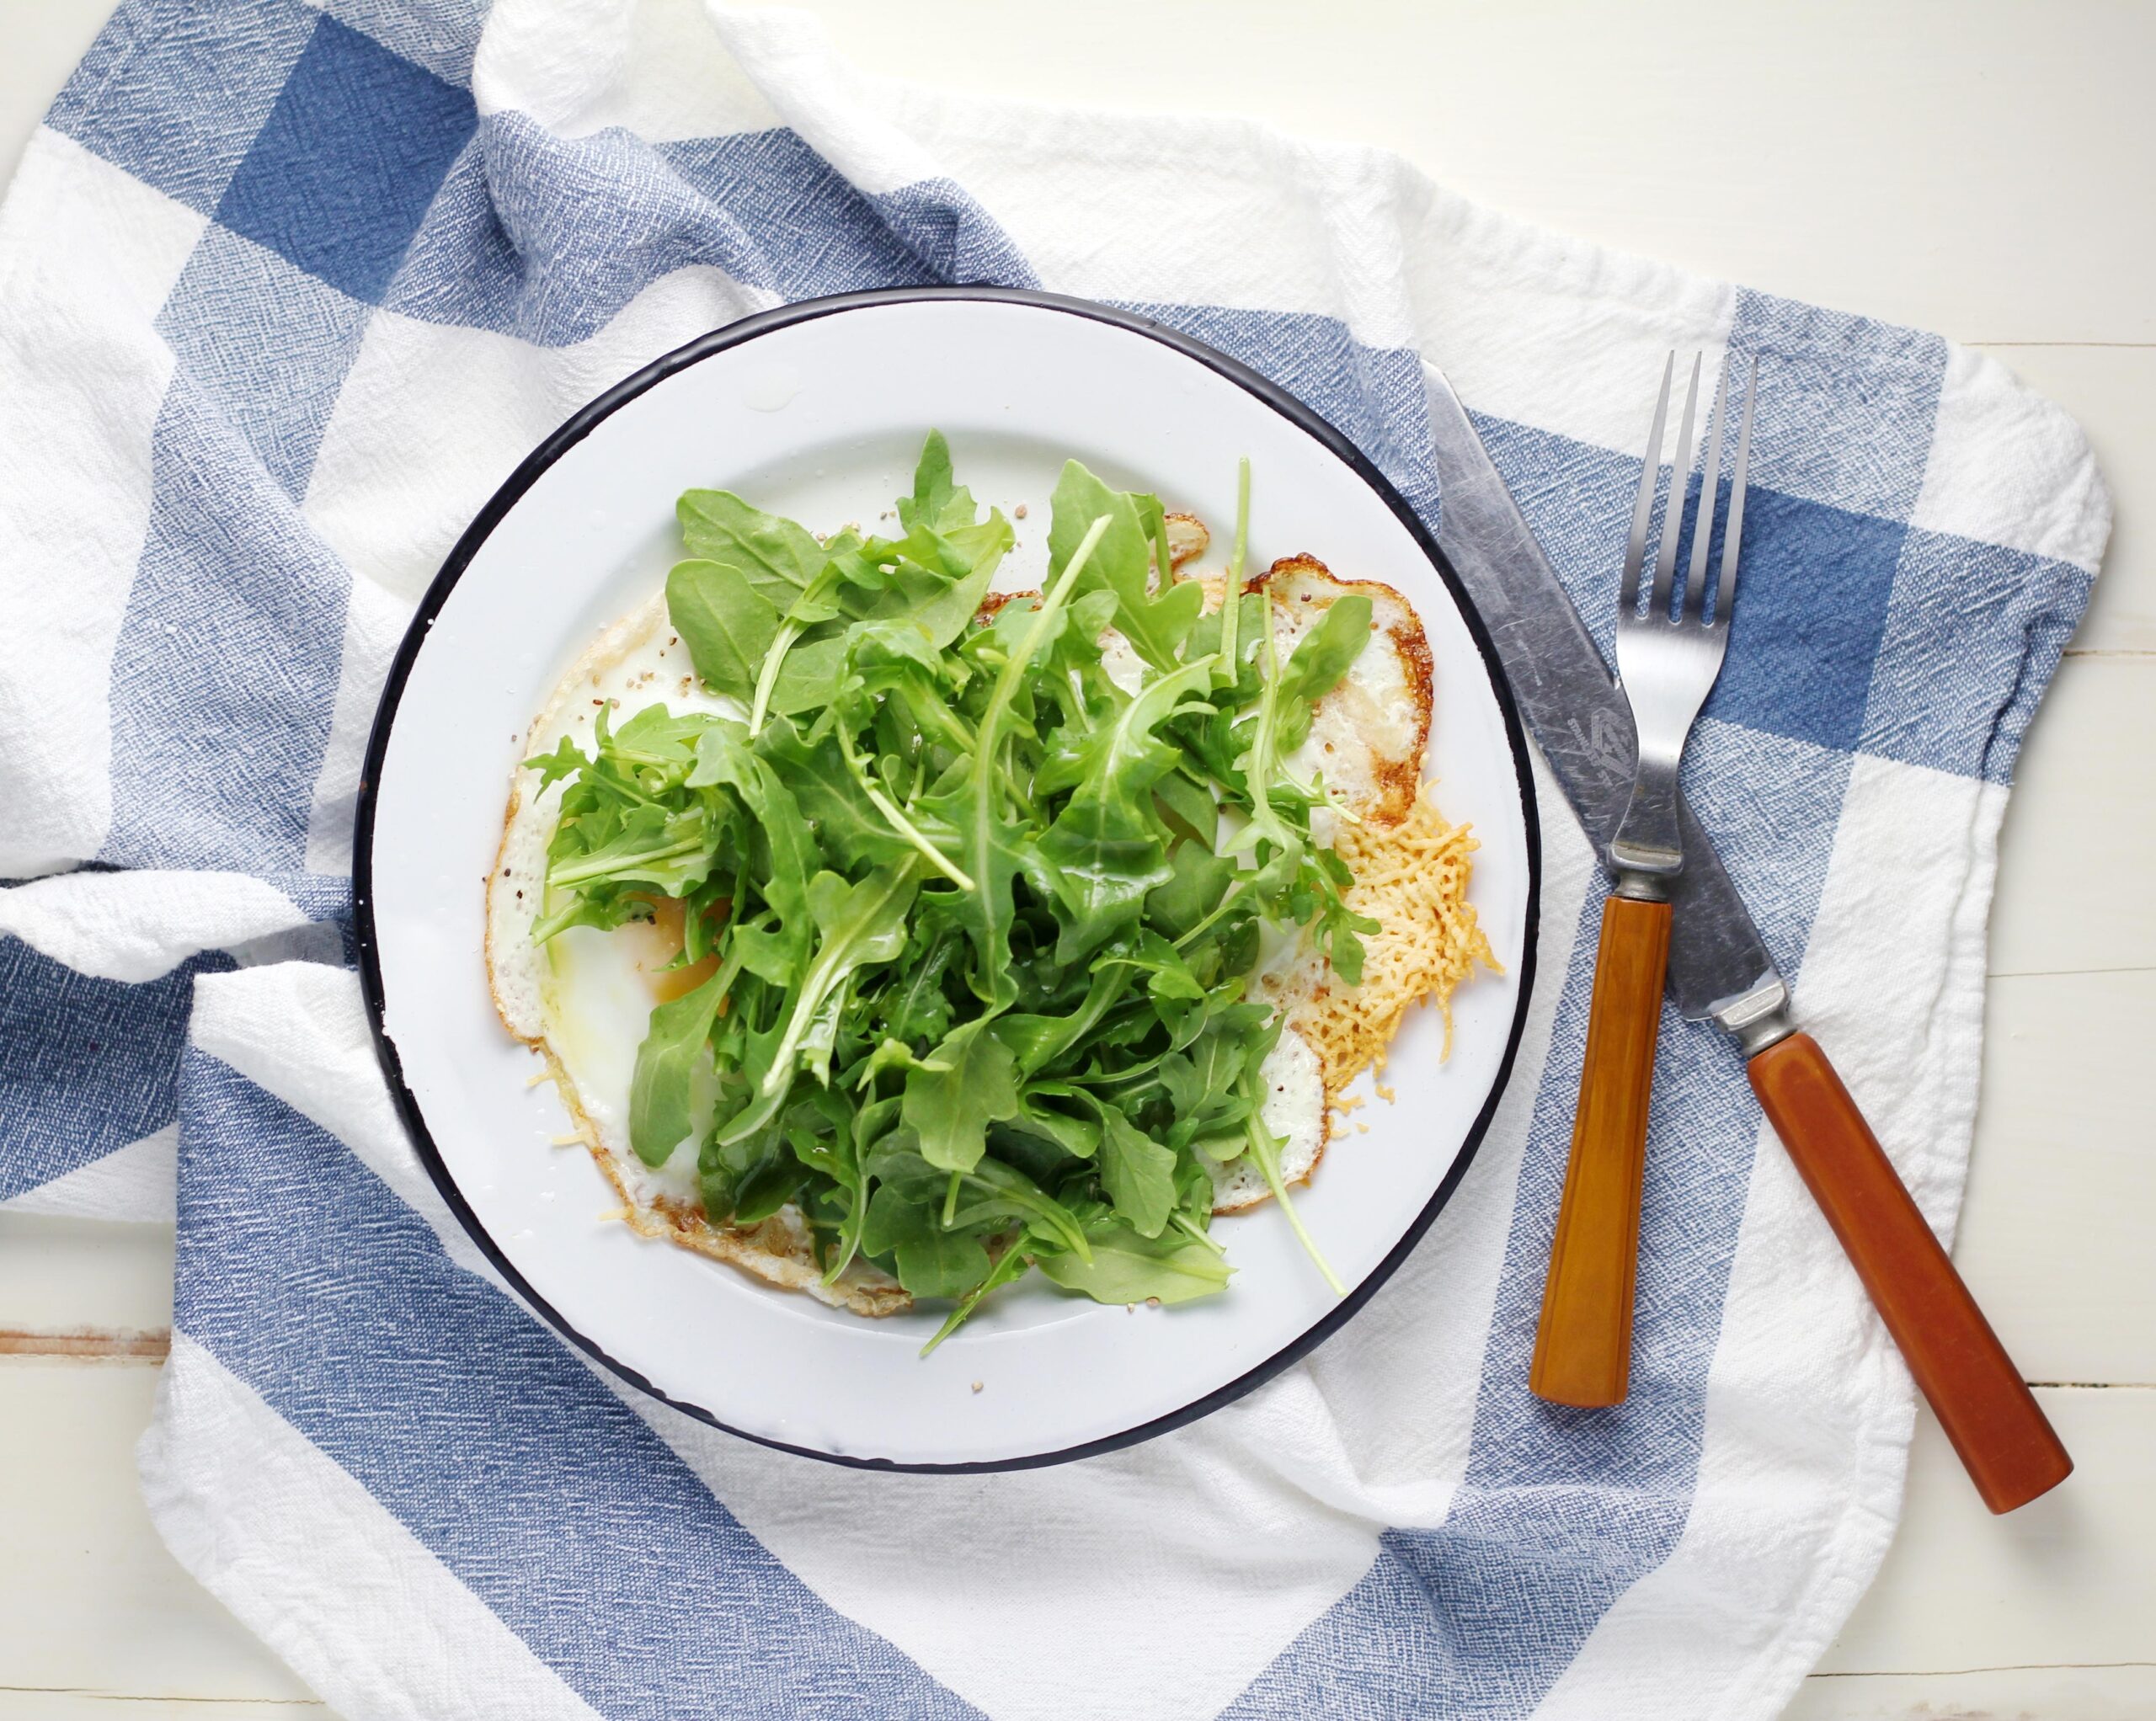 arugula and rocket salad on a plate